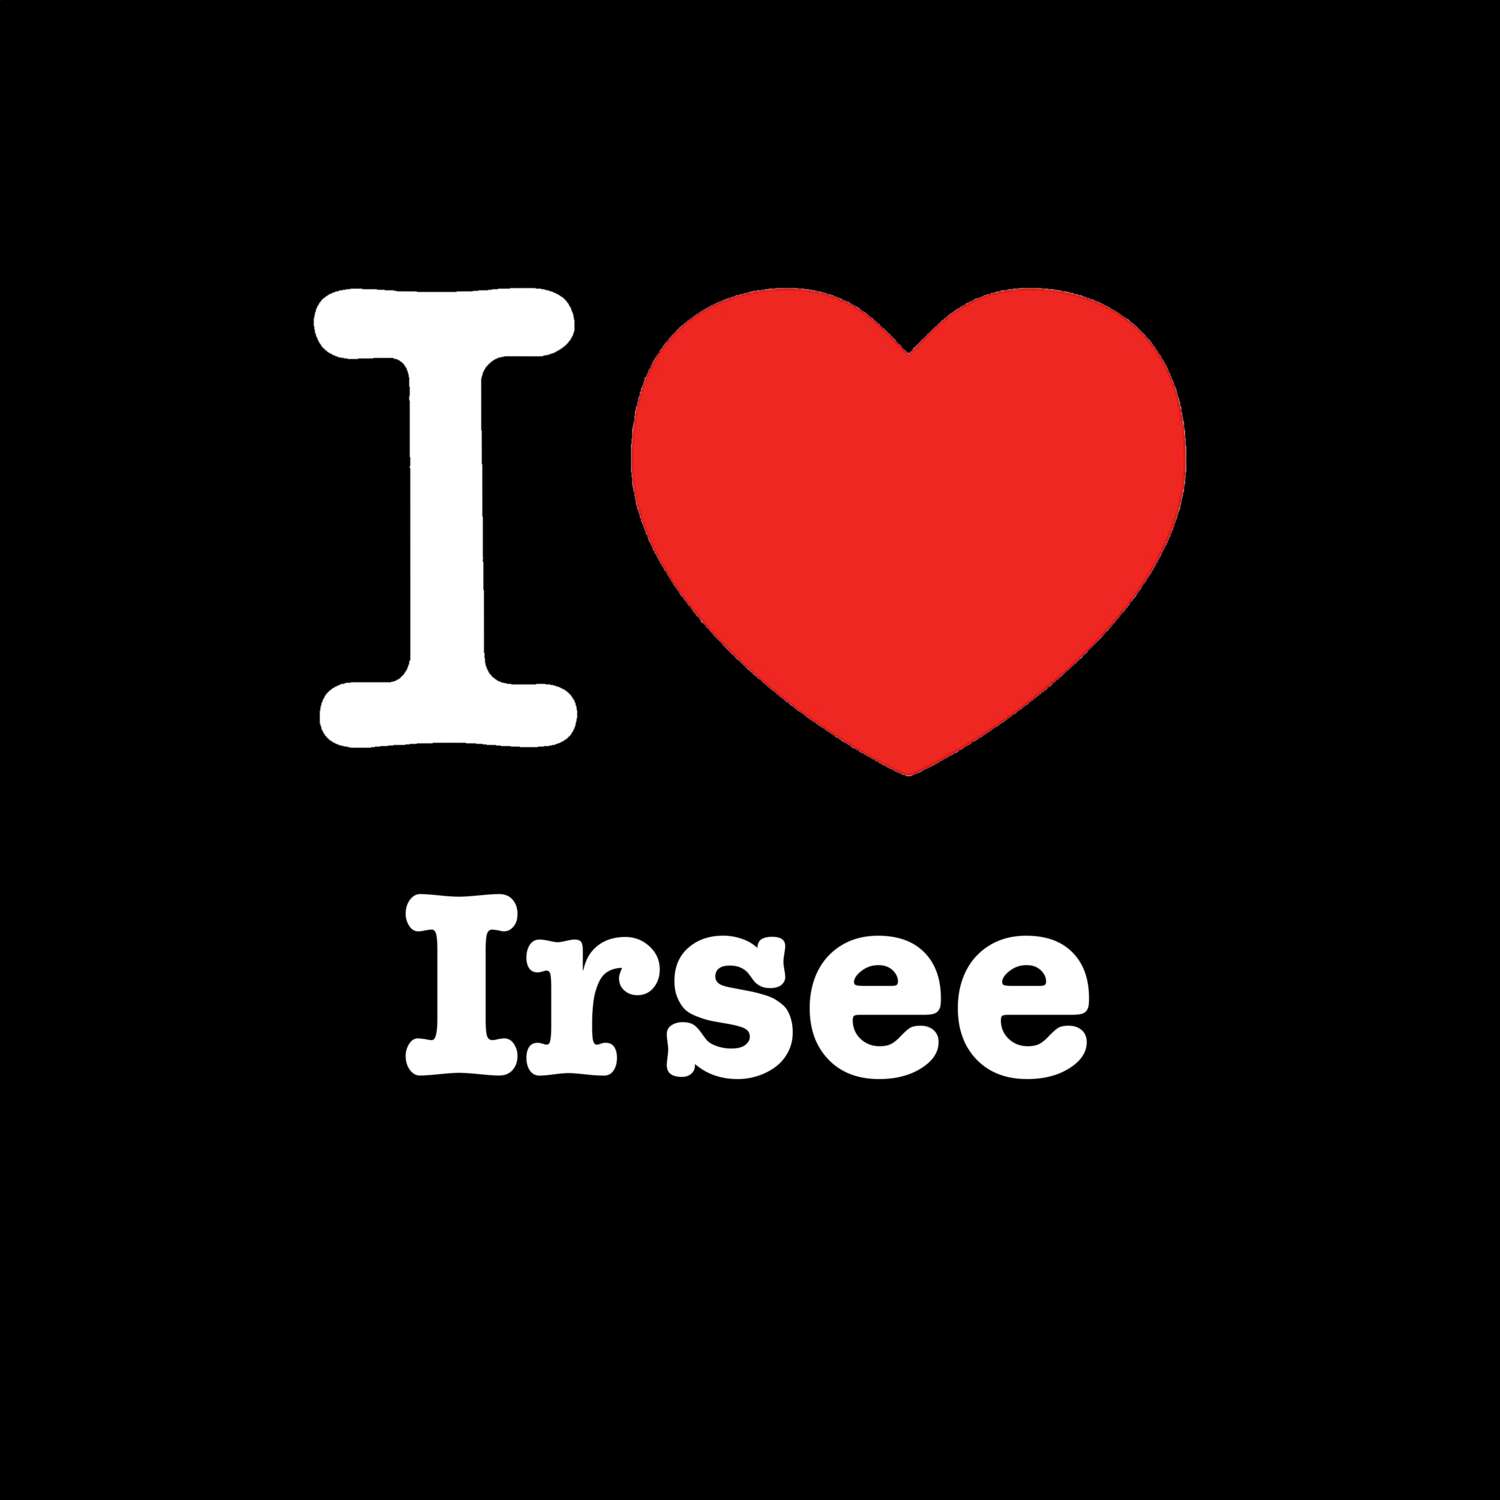 Irsee T-Shirt »I love«